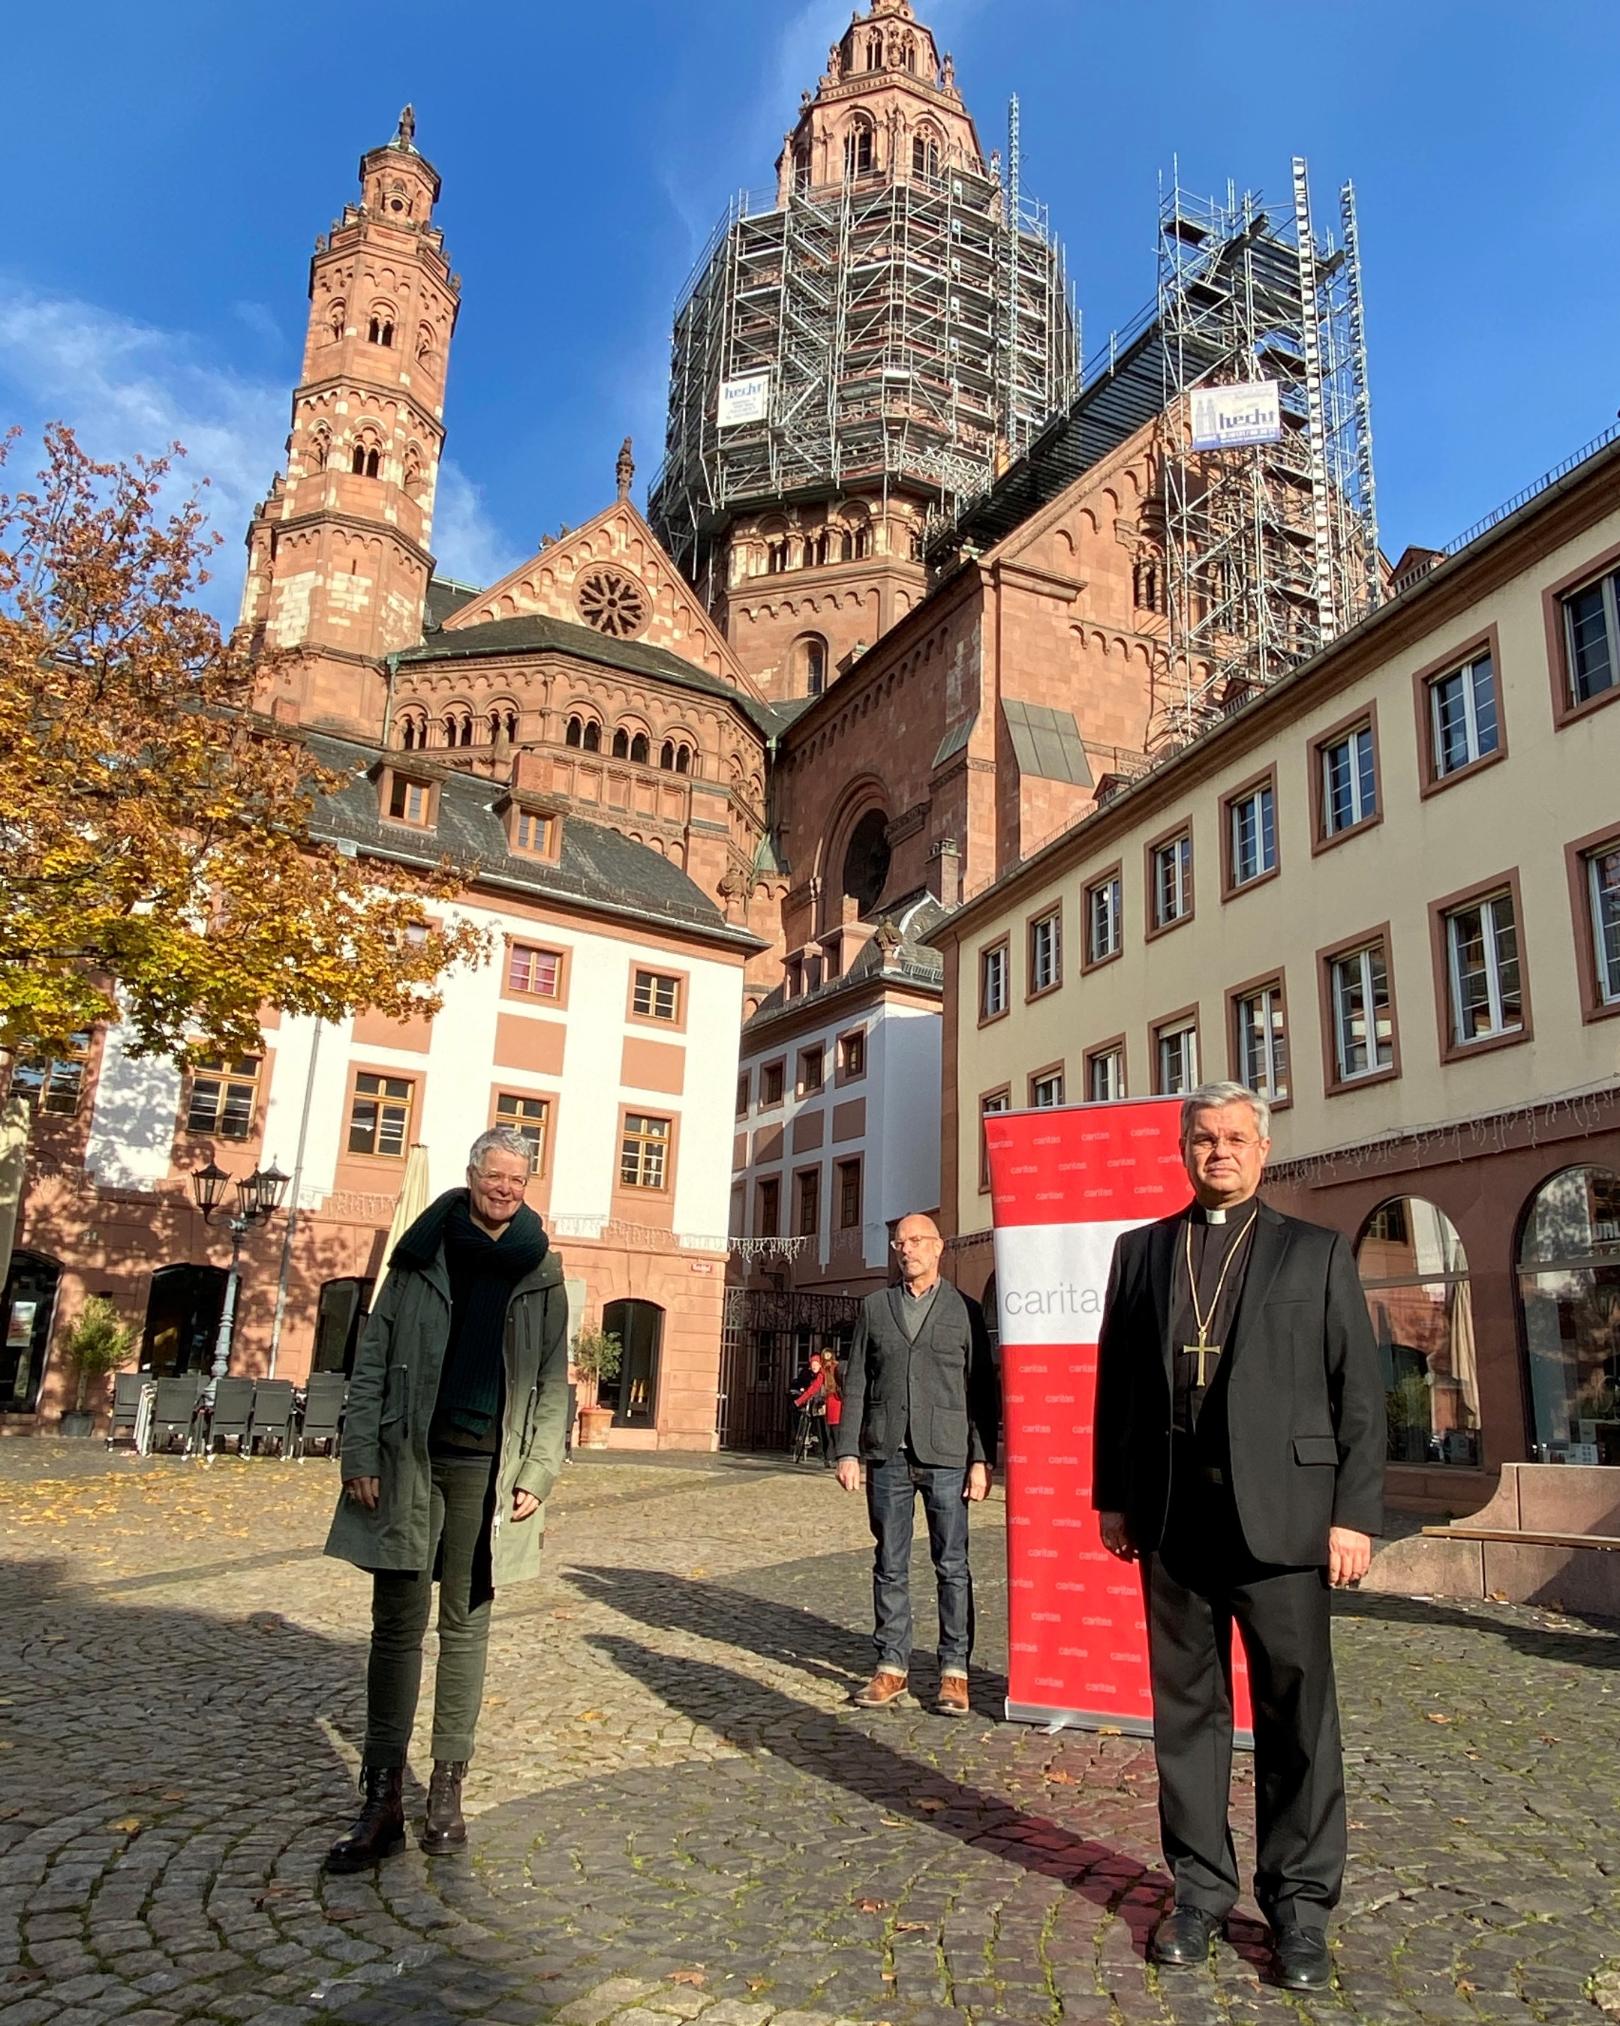 Caritas beendet Armutswochen und fordert Recht auf Schuldnerberatung (c) Caritasverband für die Diözese Mainz e.V.